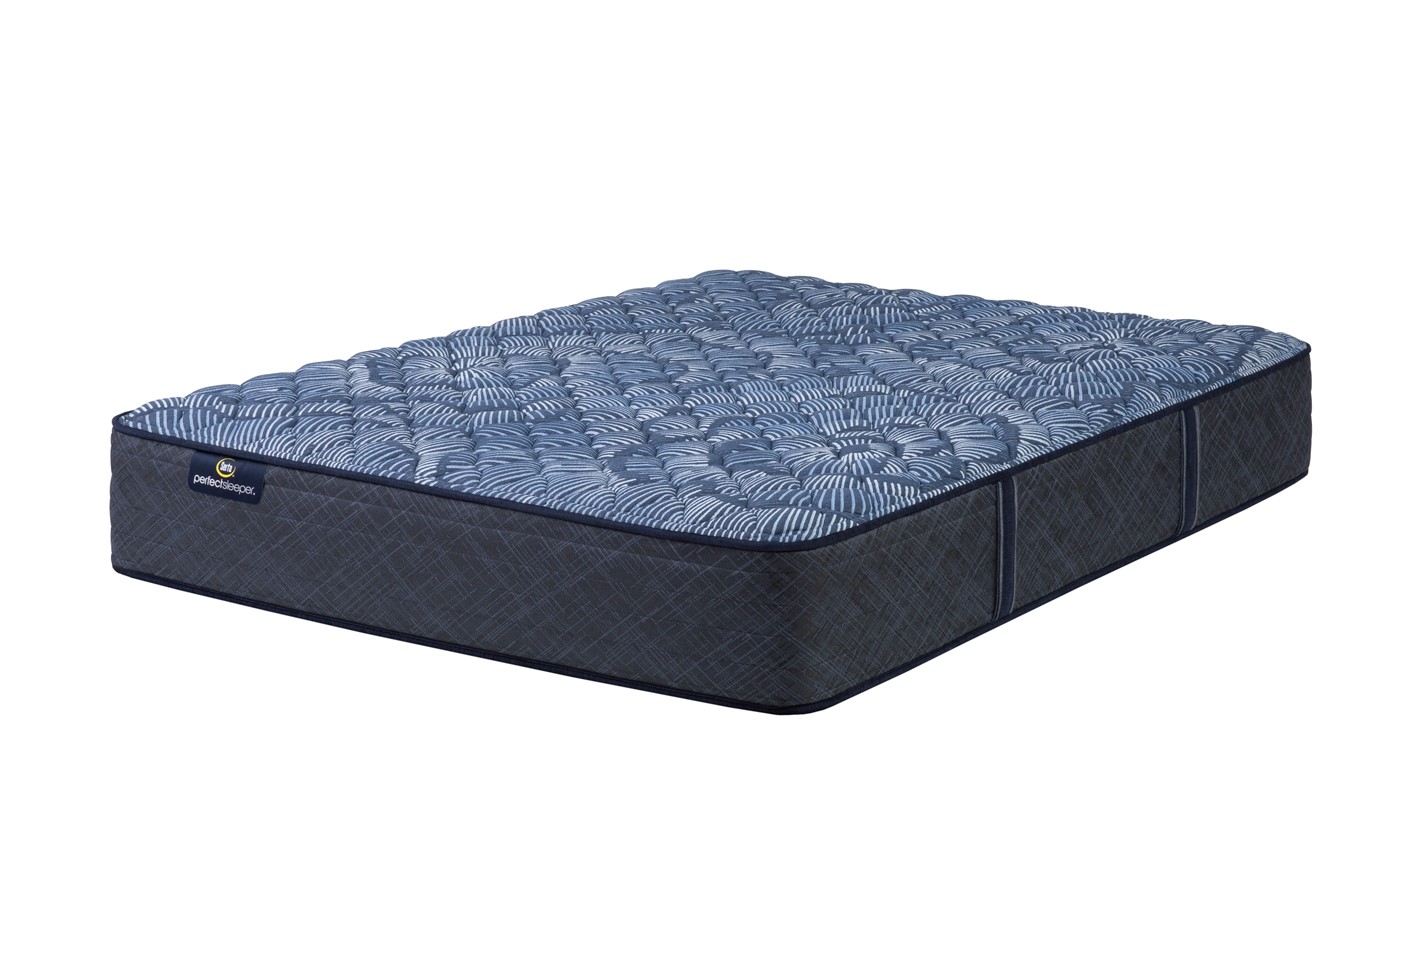 Photo of the Serta Perfect Sleeper Cobalt Calm Extra Firm mattress.